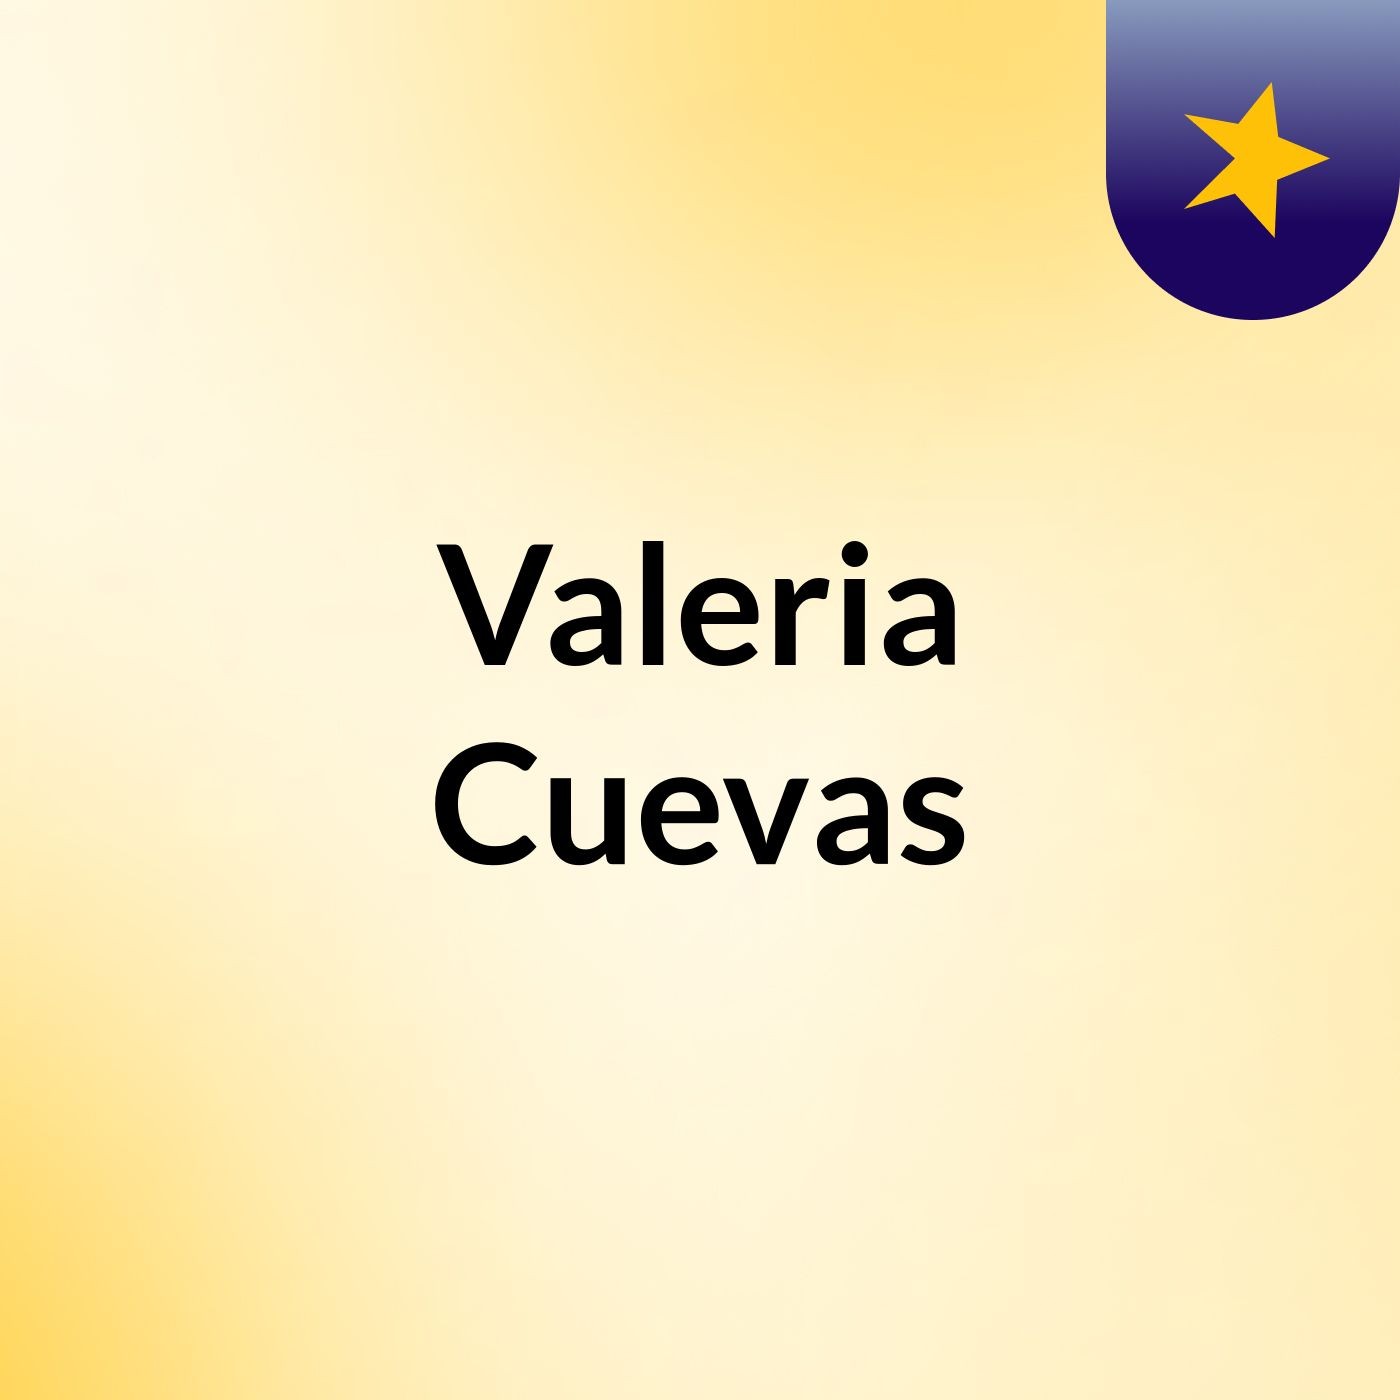 Valeria Cuevas